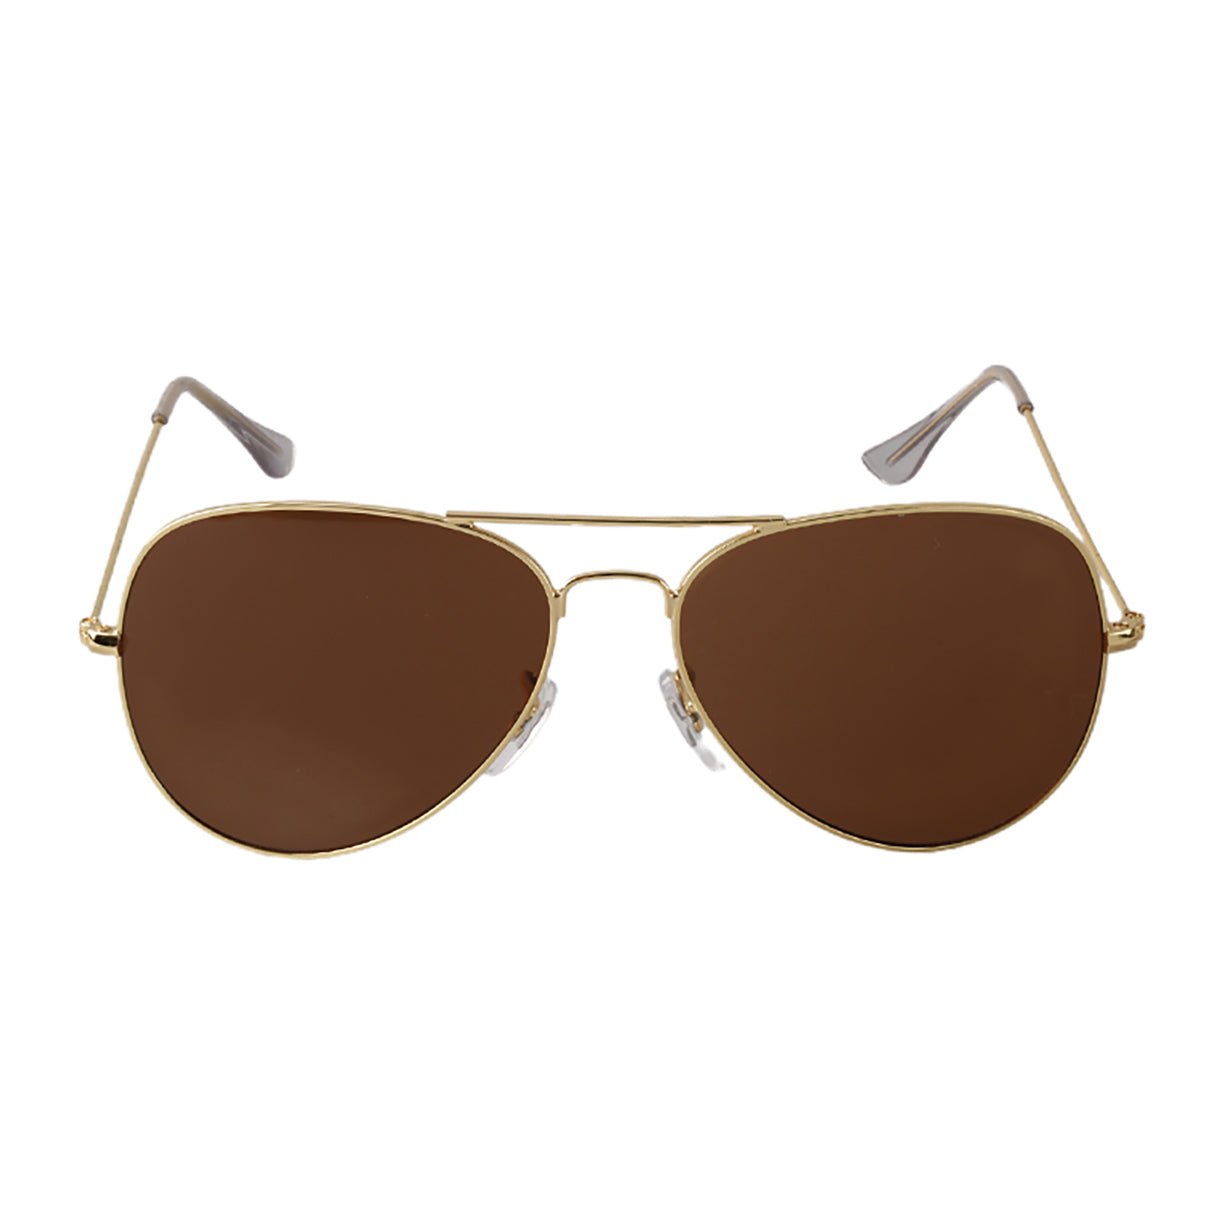 Classic Style Sunglasses - starcopia design store